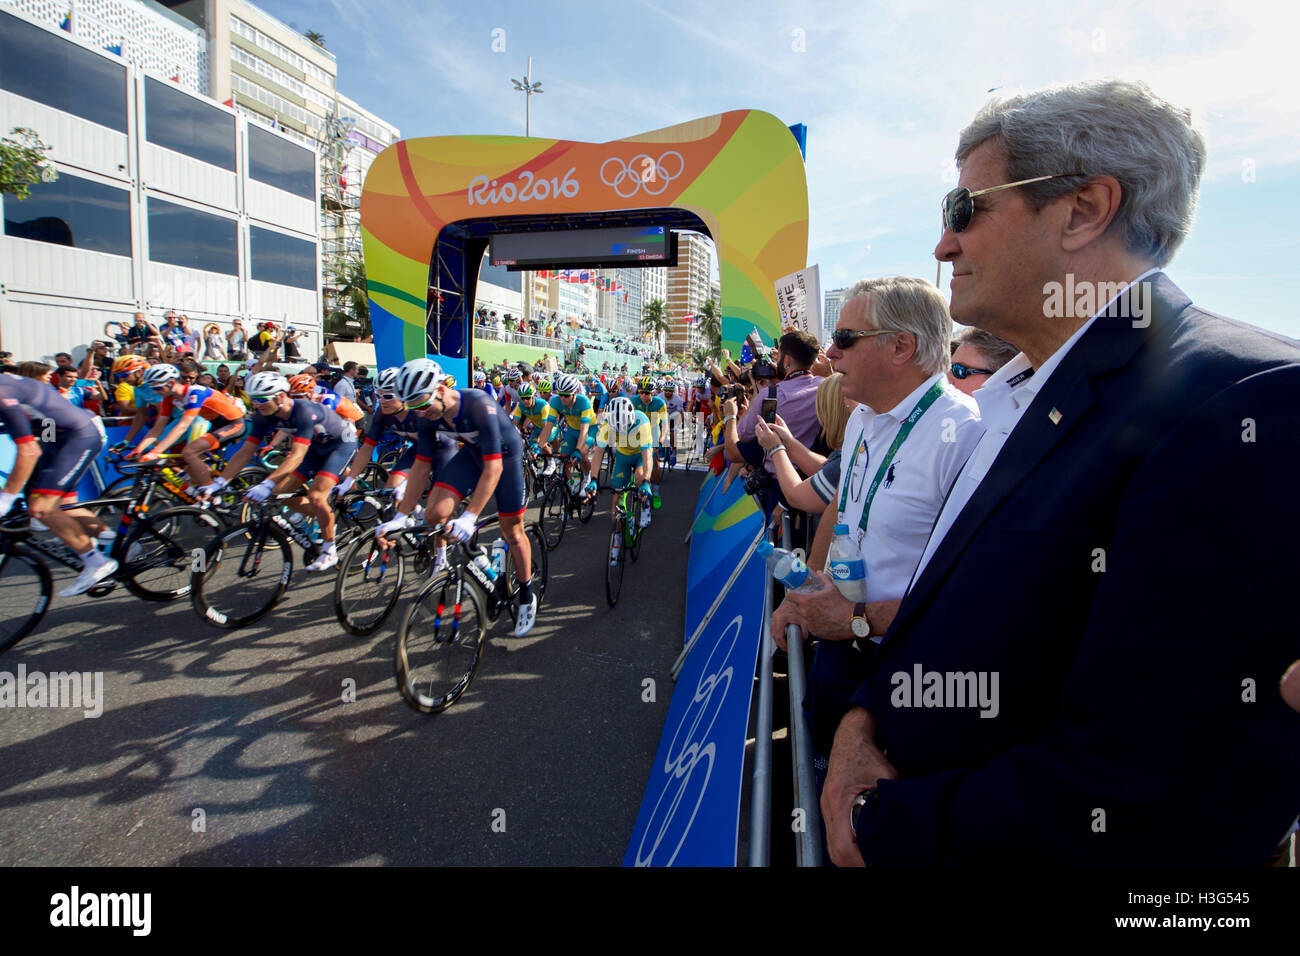 Le secrétaire d'Etat John Kerry observe le début des Jeux Olympiques men's course à bicyclette le long de la plage de Copacabana à Rio de Janeiro, Brésil, comme lui et ses collègues membres de la délégation présidentielle américaine de participer à des jeux olympiques le 6 août 2016. Banque D'Images